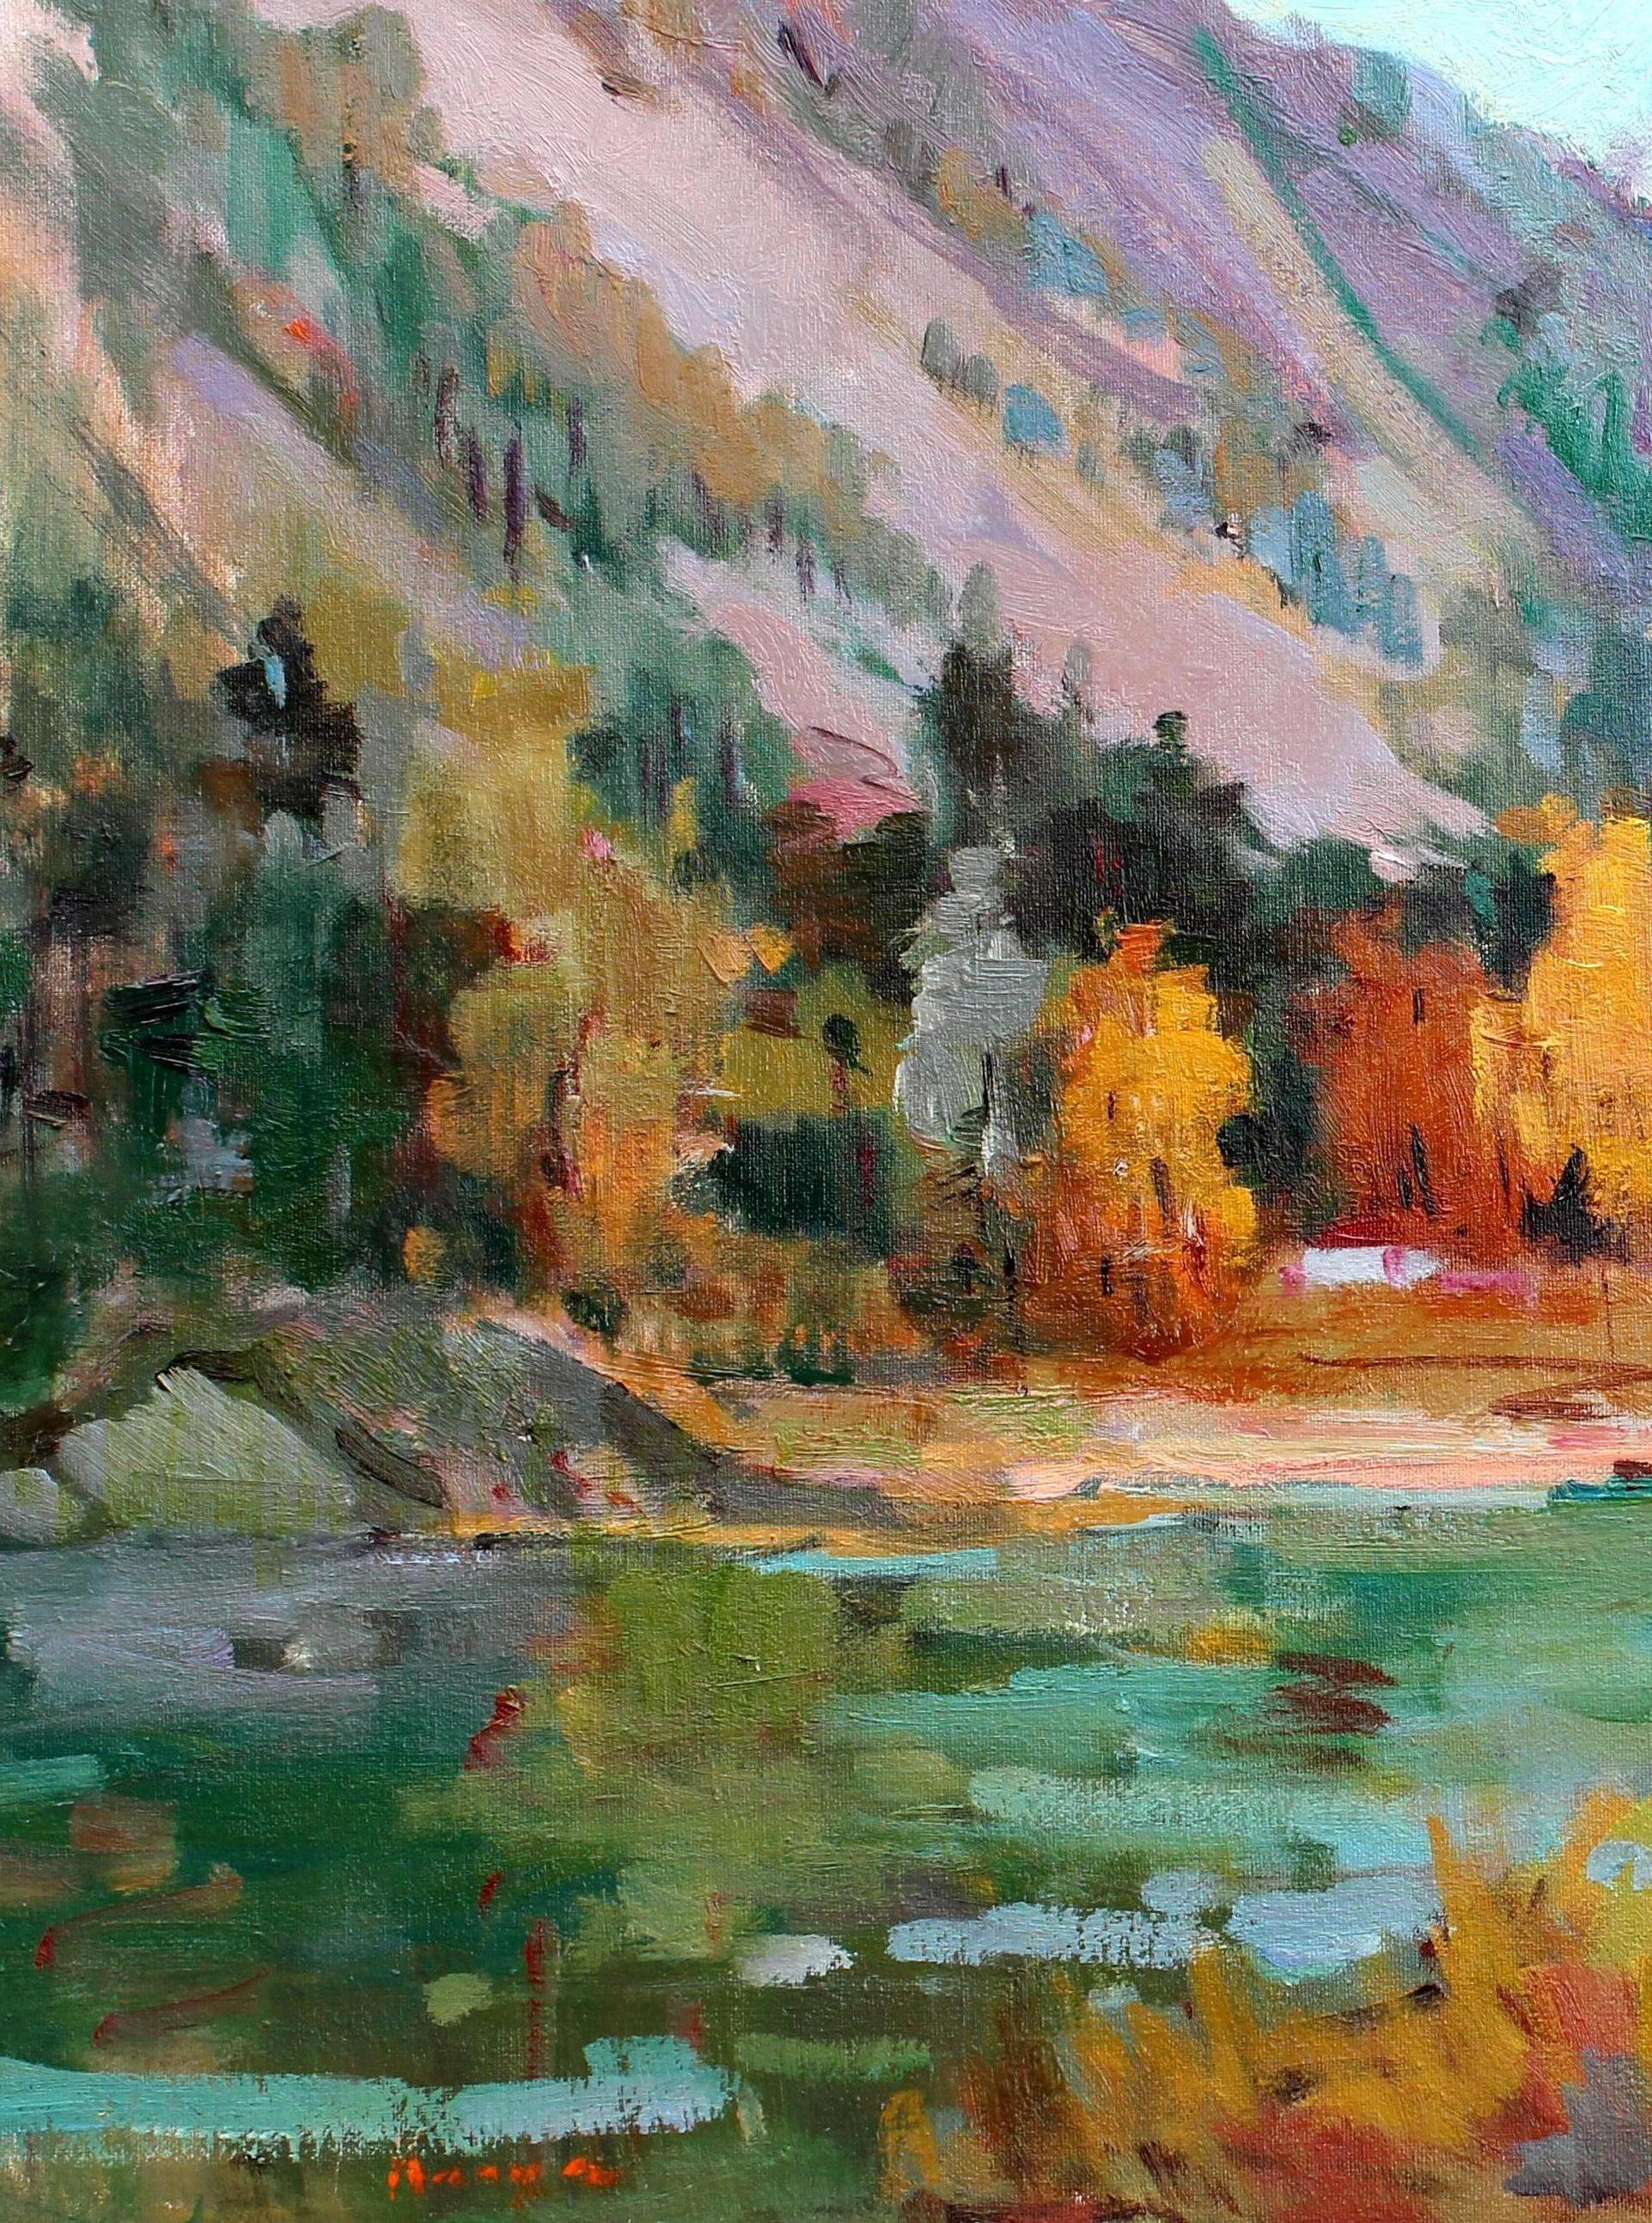 Los Osos, California - Painting by Kanya Bugreyev